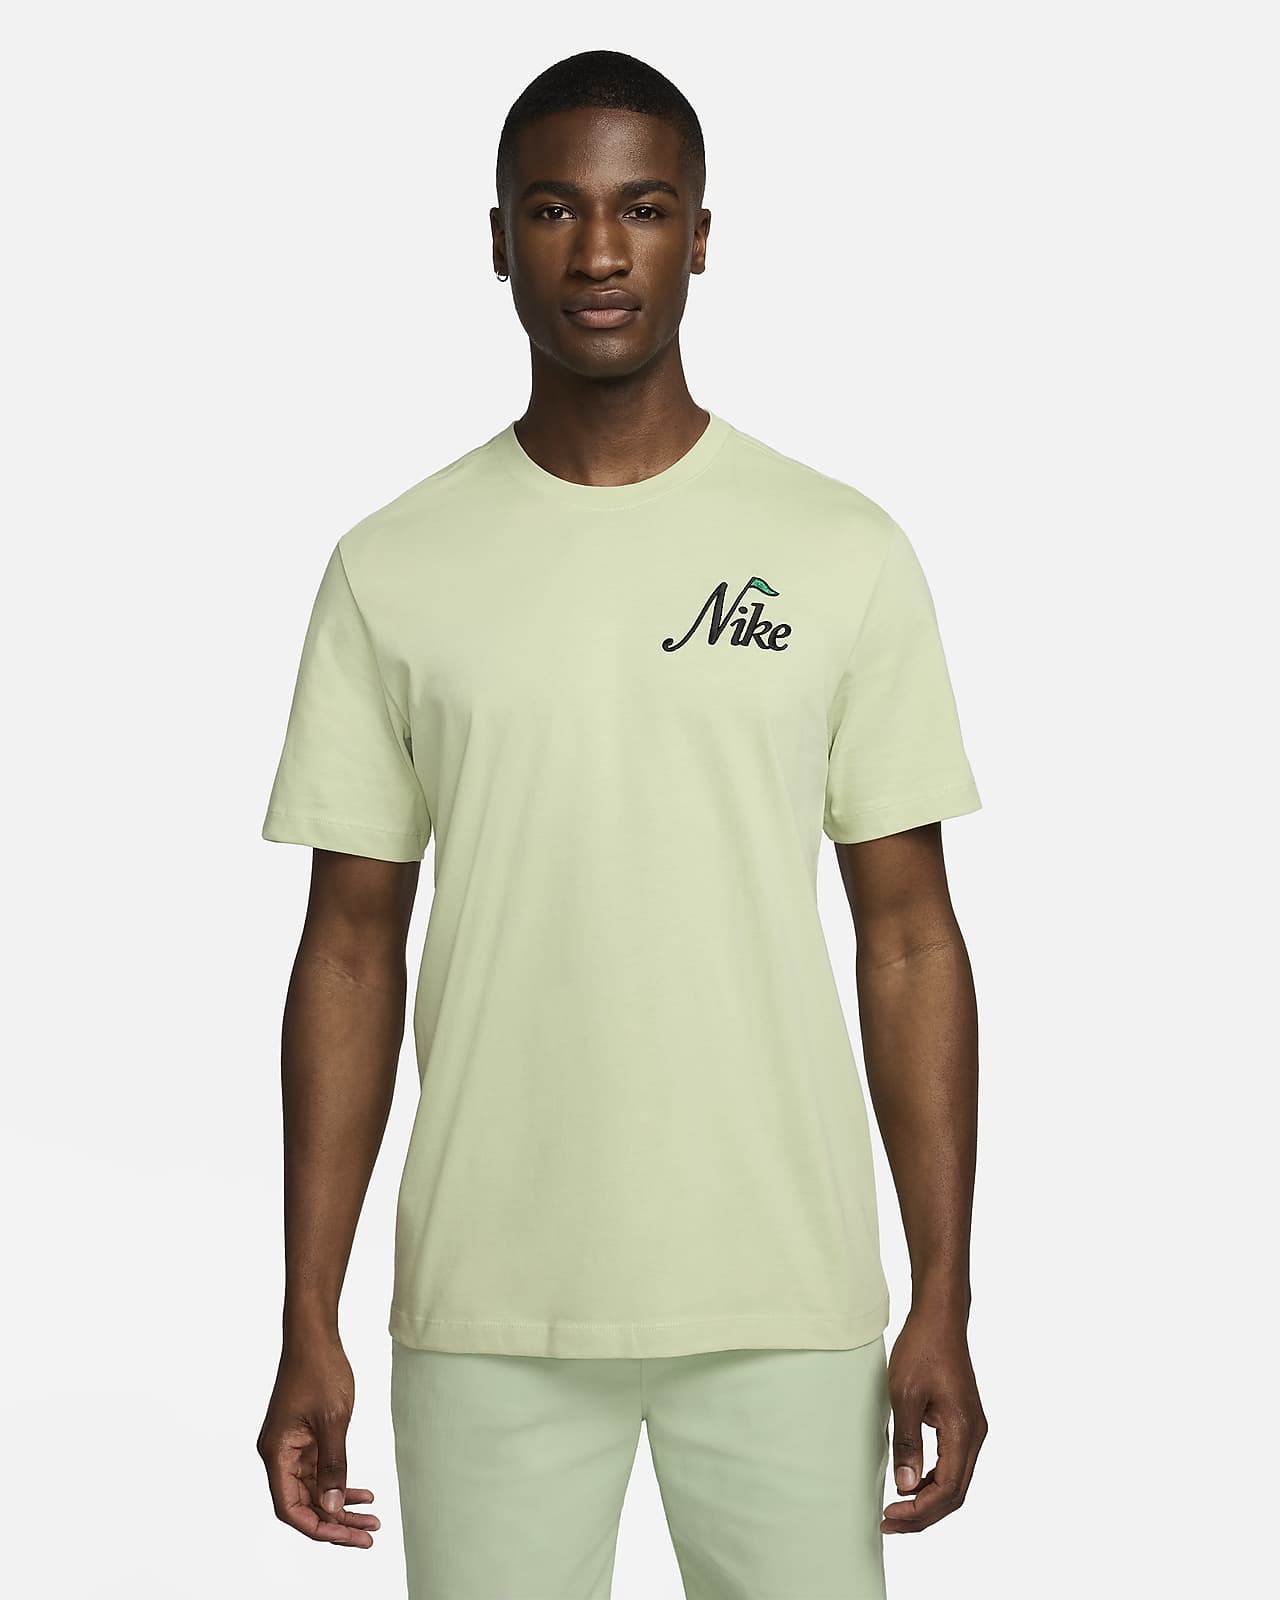 Nike Erkek Golf Tişörtü